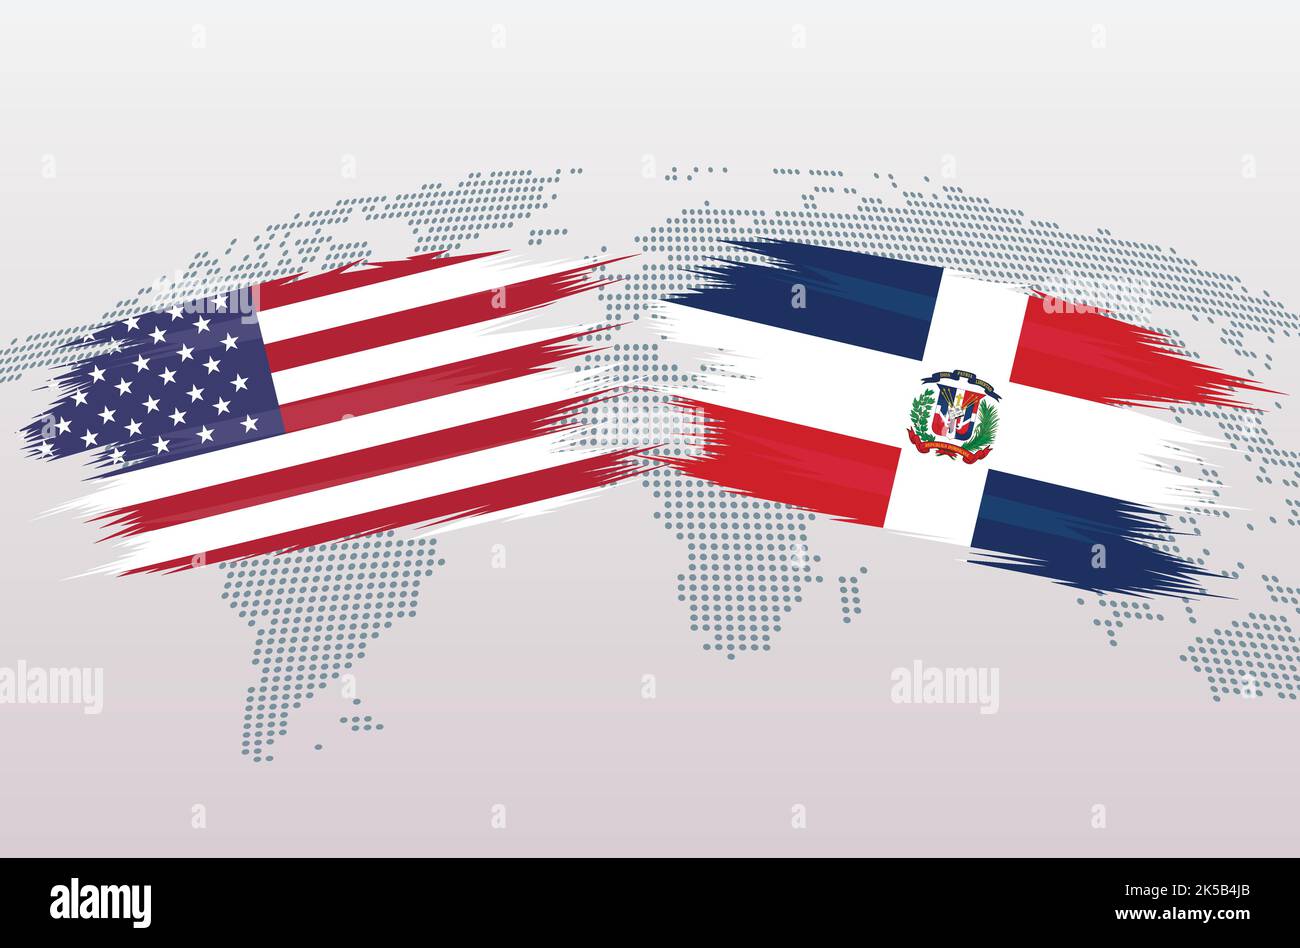 Bandiere USA vs Repubblica Dominicana. Bandiere degli Stati Uniti d'America vs Repubblica Dominicana, isolate su sfondo grigio della mappa del mondo. Illustrazione vettoriale. Illustrazione Vettoriale